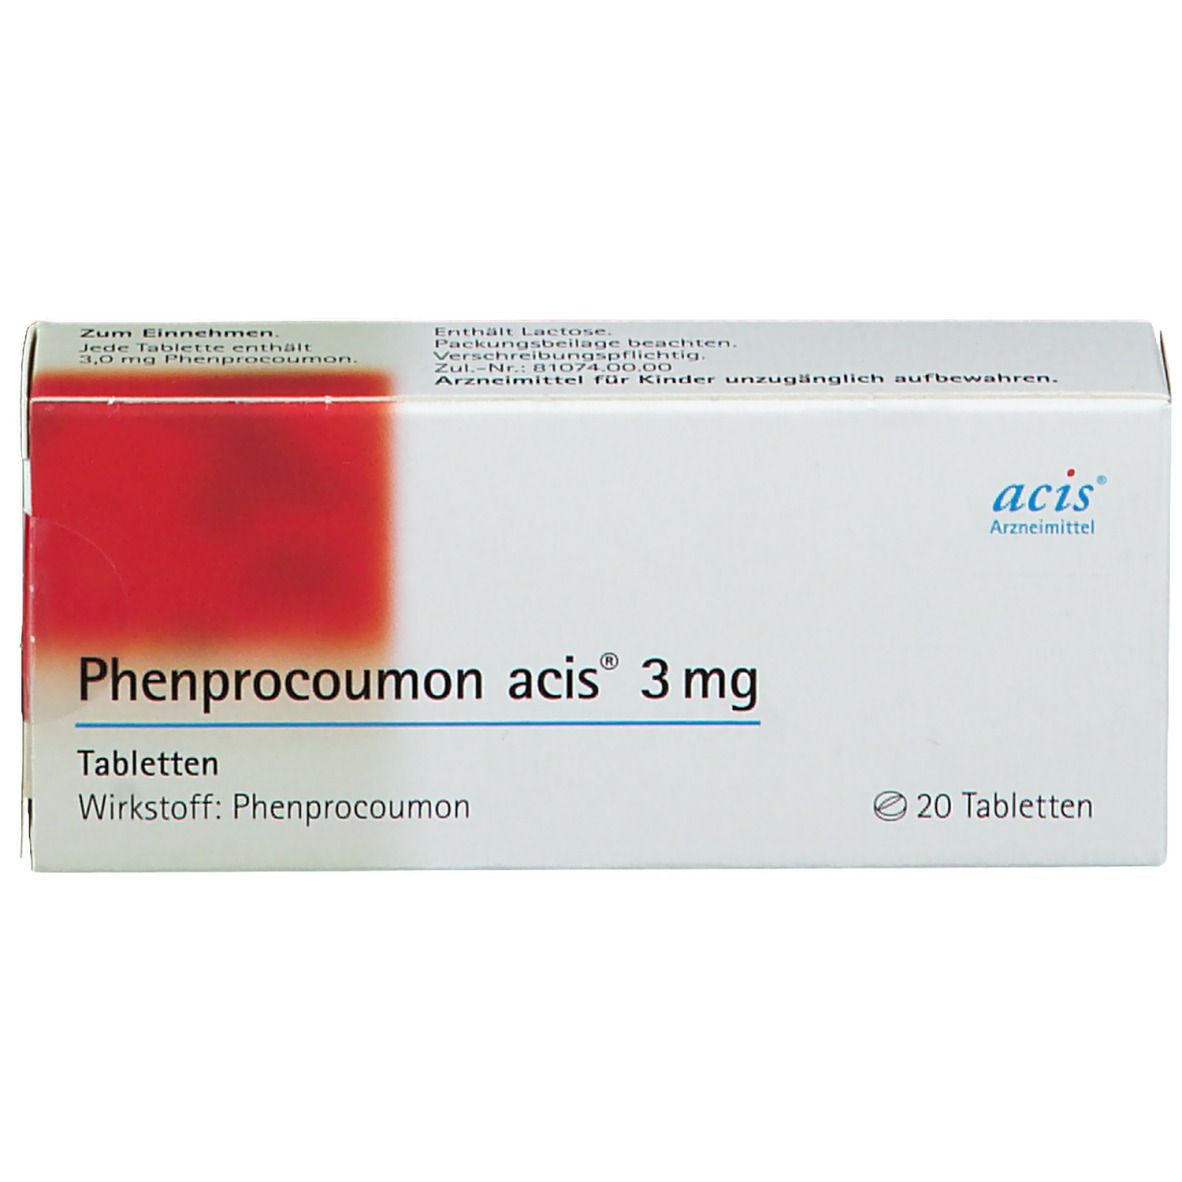 Phenprocoumon acis® 3 mg